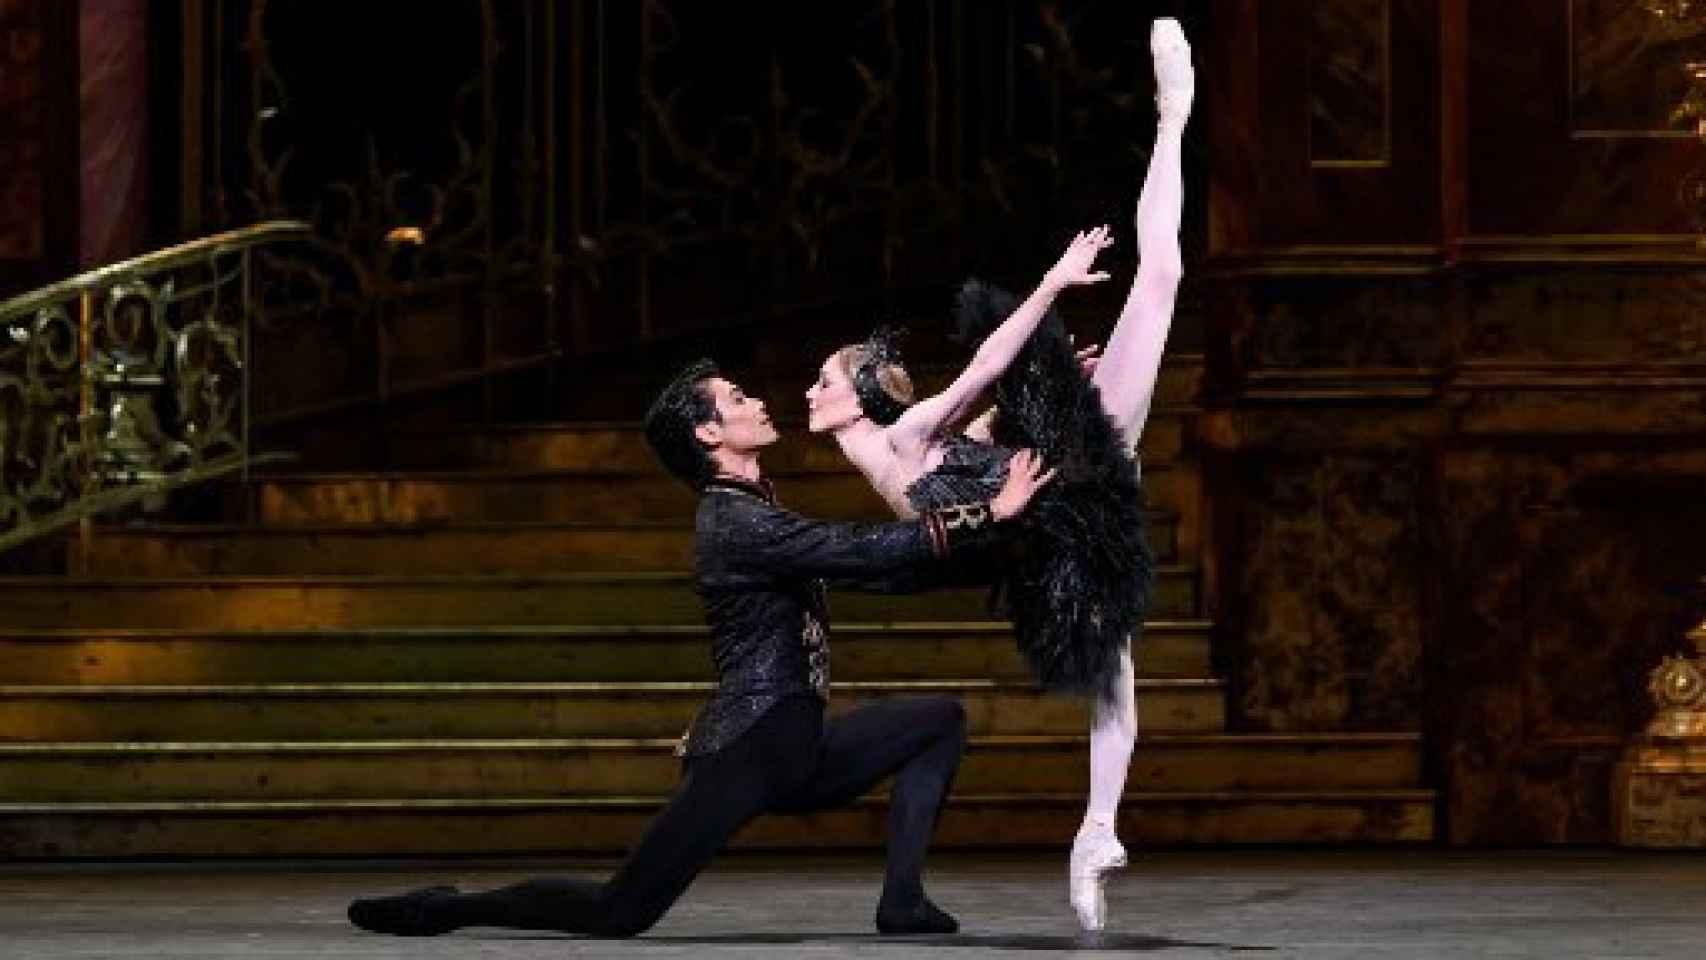 Image: Royal Ballet, bailando con cisnes